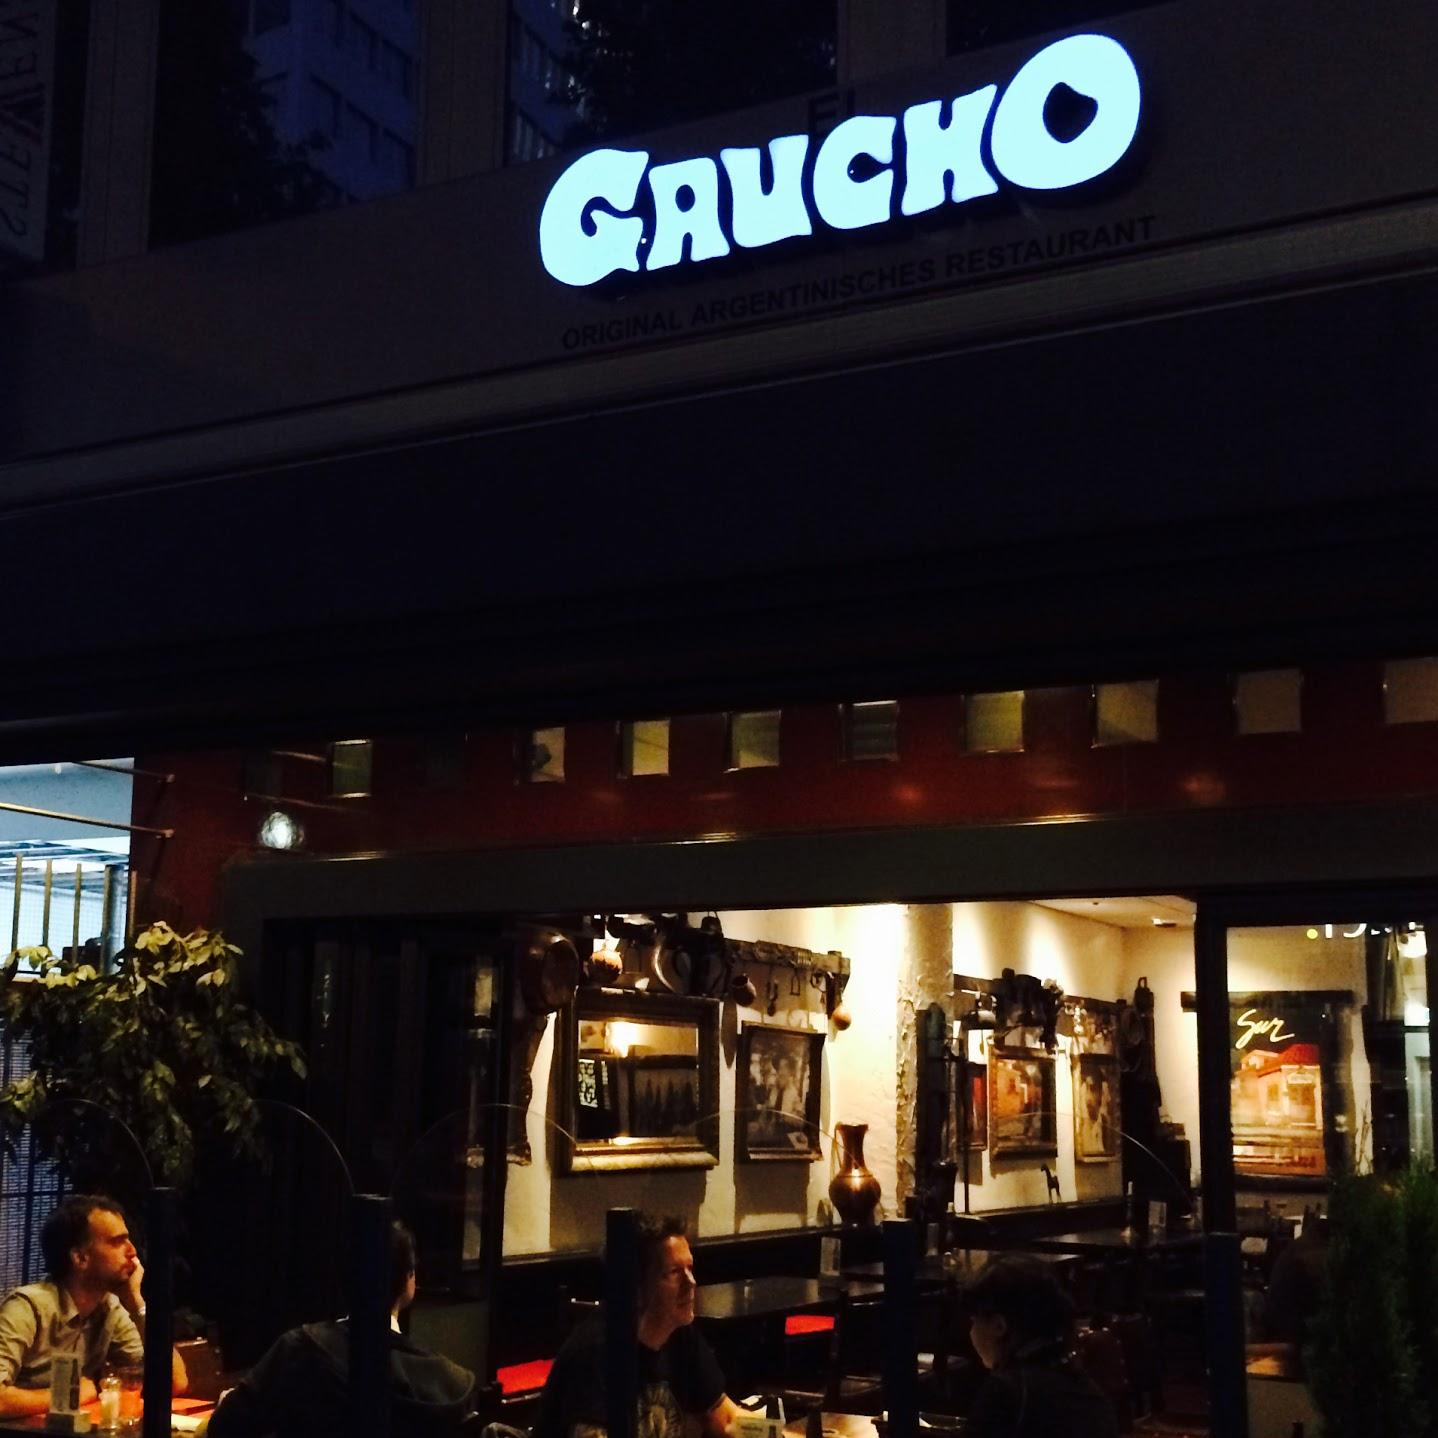 Restaurant "El Gaucho" in  Köln